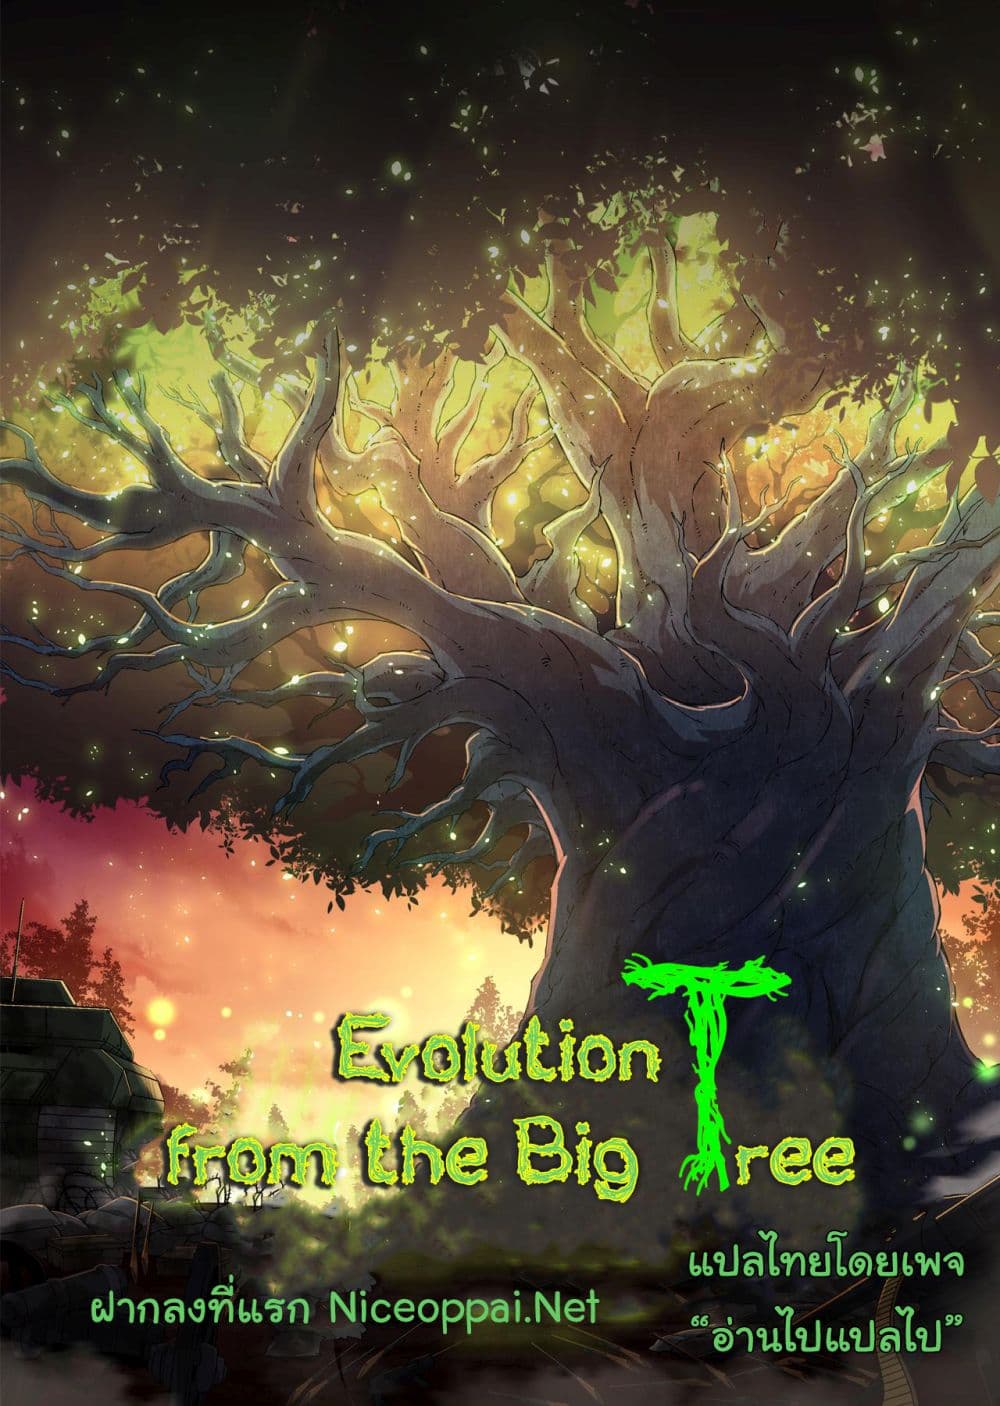 Evolution from the Big Tree Ã Â¸â€¢Ã Â¸Â­Ã Â¸â„¢Ã Â¸â€”Ã Â¸ÂµÃ Â¹Ë† 5 (45)